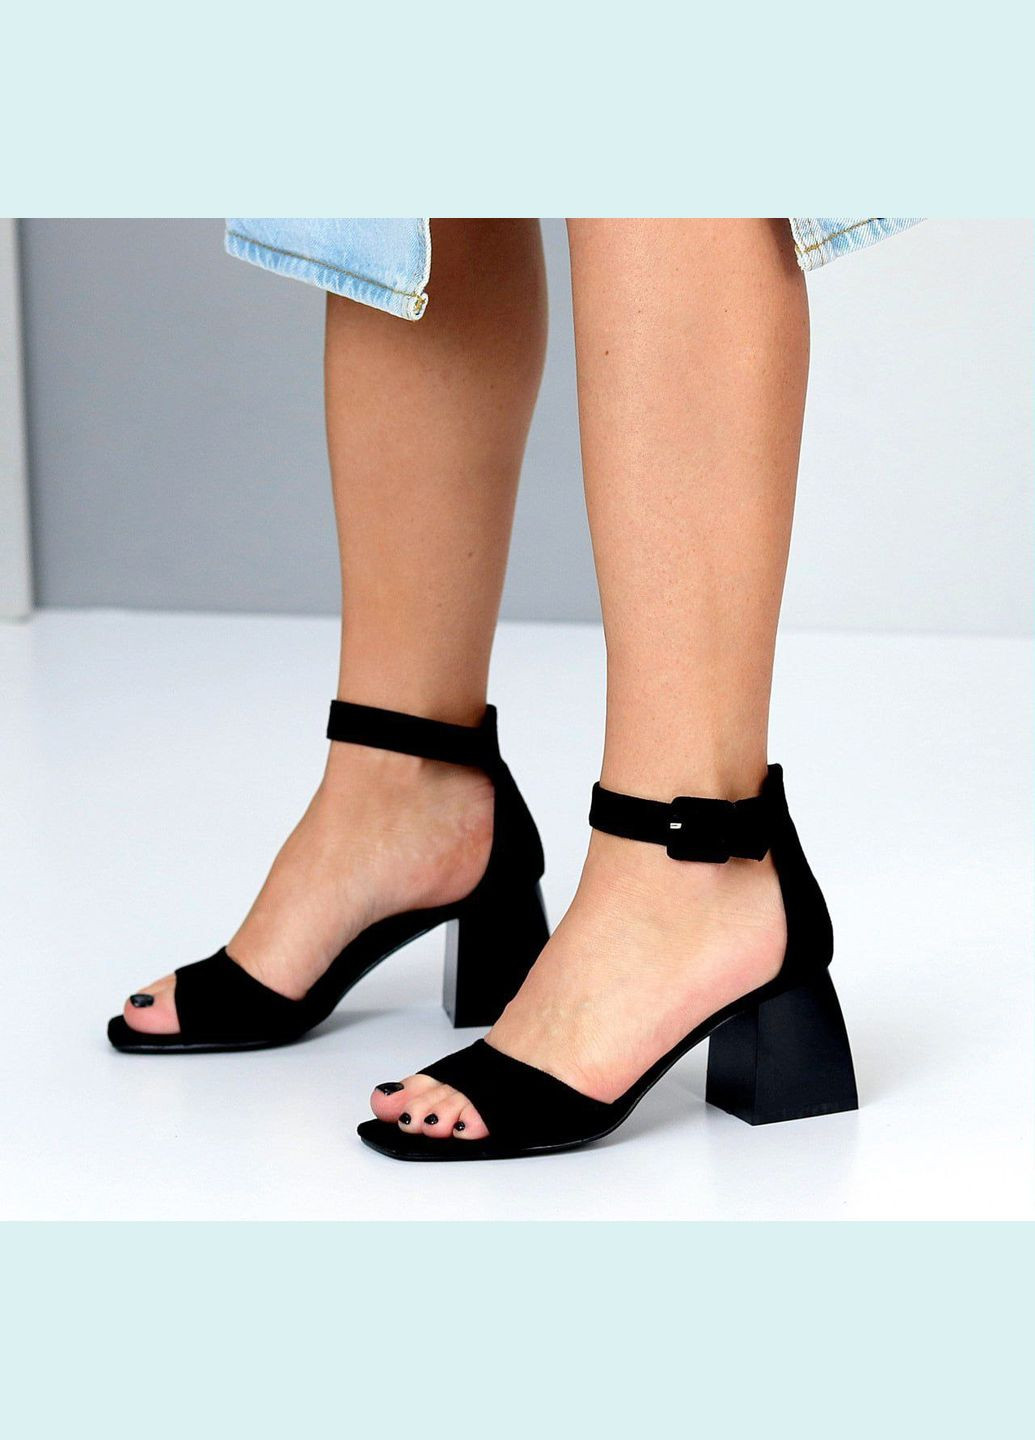 Жіночі босоніжки чорні на грубому каблуку сандалі літні на каблуках чорного кольору Viki босоніжки (282744167)